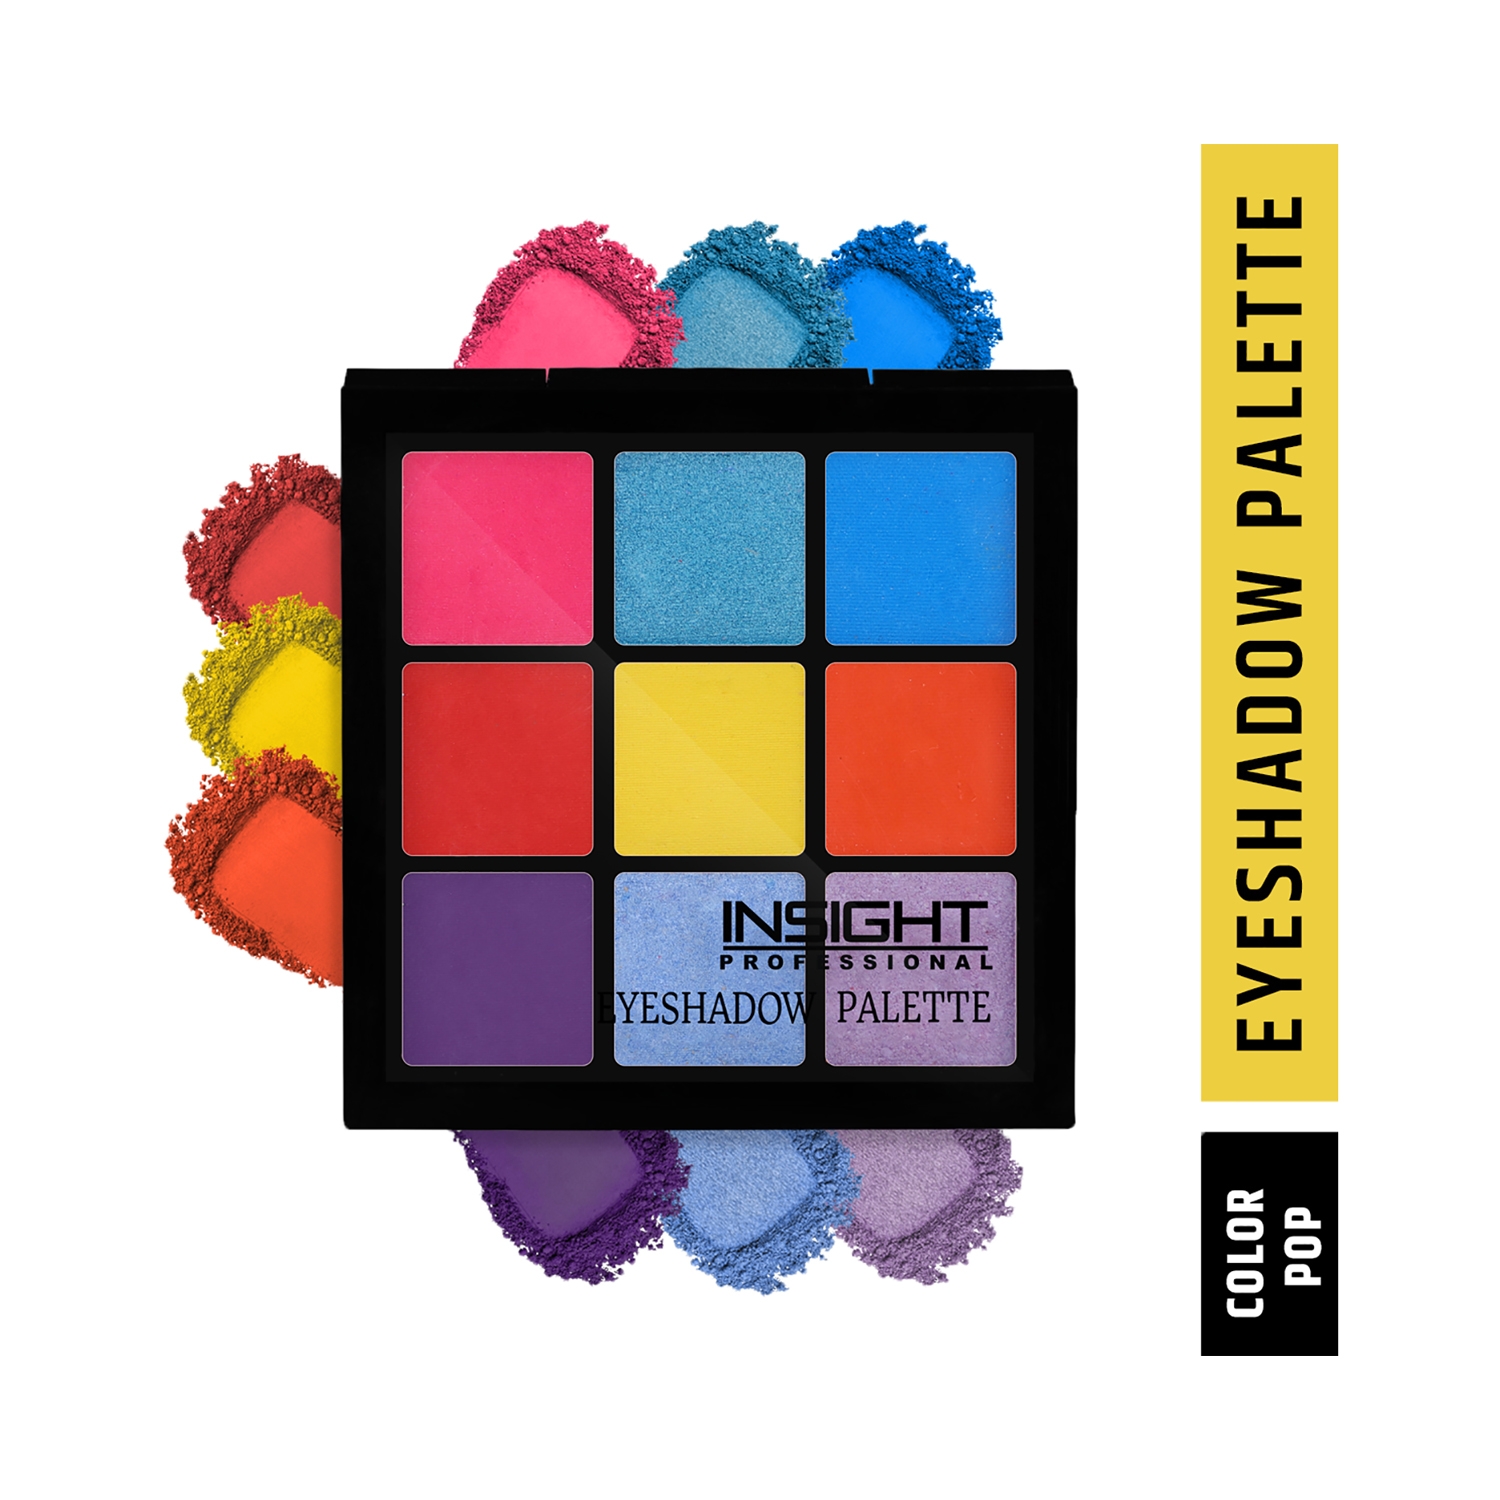 Insight Professional | Insight Professional Eyeshadow Palette - Color Pop (15g)